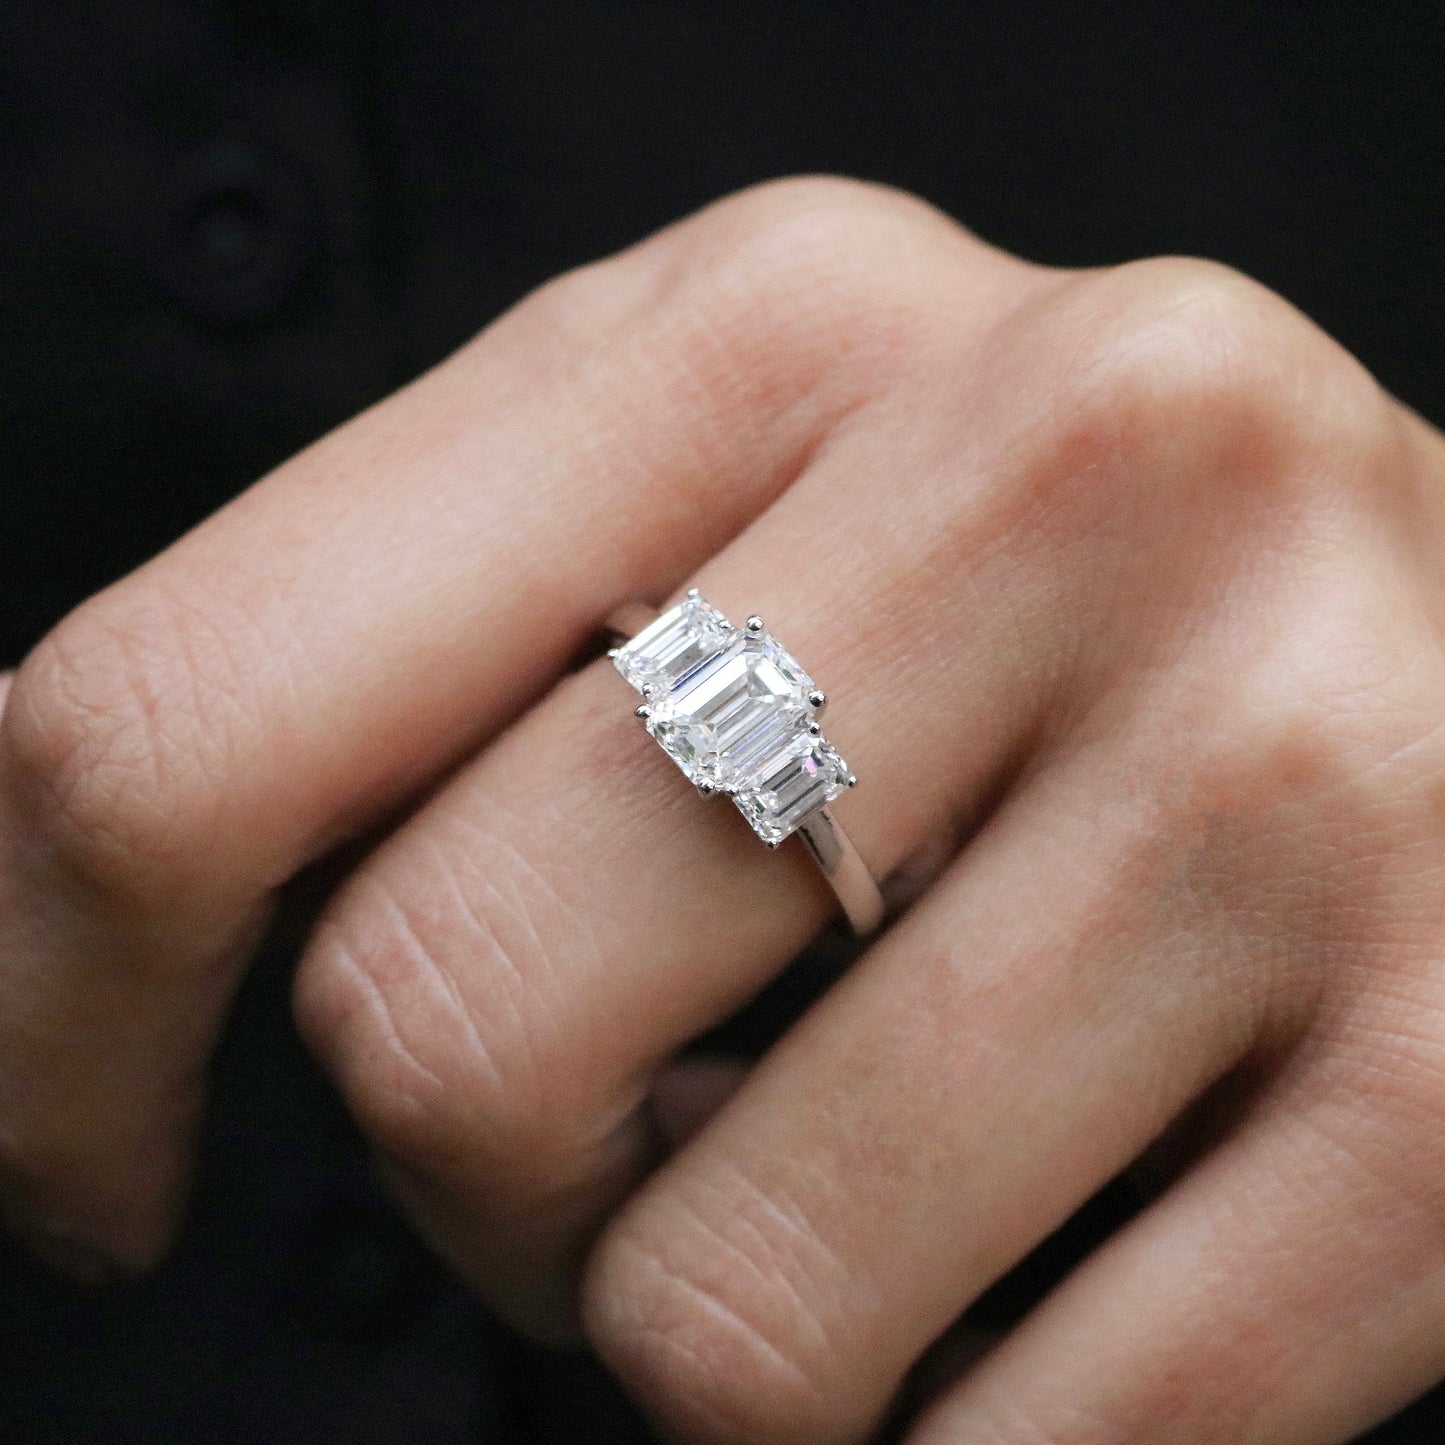 Periwinkle Lab Grown Diamond Ring - Fiona Diamonds - Fiona Diamonds